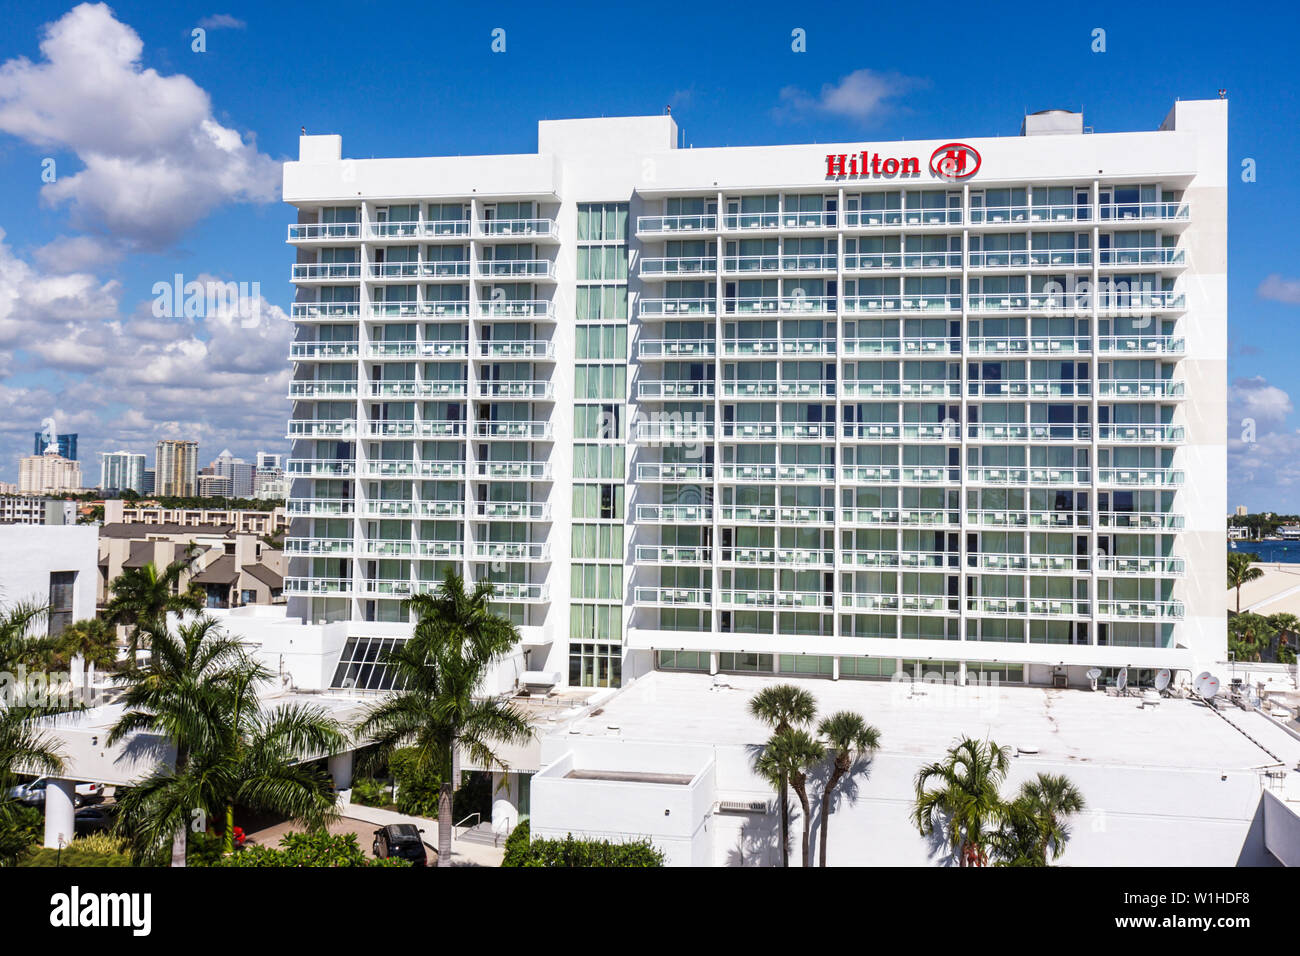 Fort Ft. Lauderdale Florida,Hilton Fort Lauderdale Marina,hotel,hoteles,cadena,hospitalidad,alojamiento,edificio,rascacielos de gran altura construyendo fanegas Foto de stock